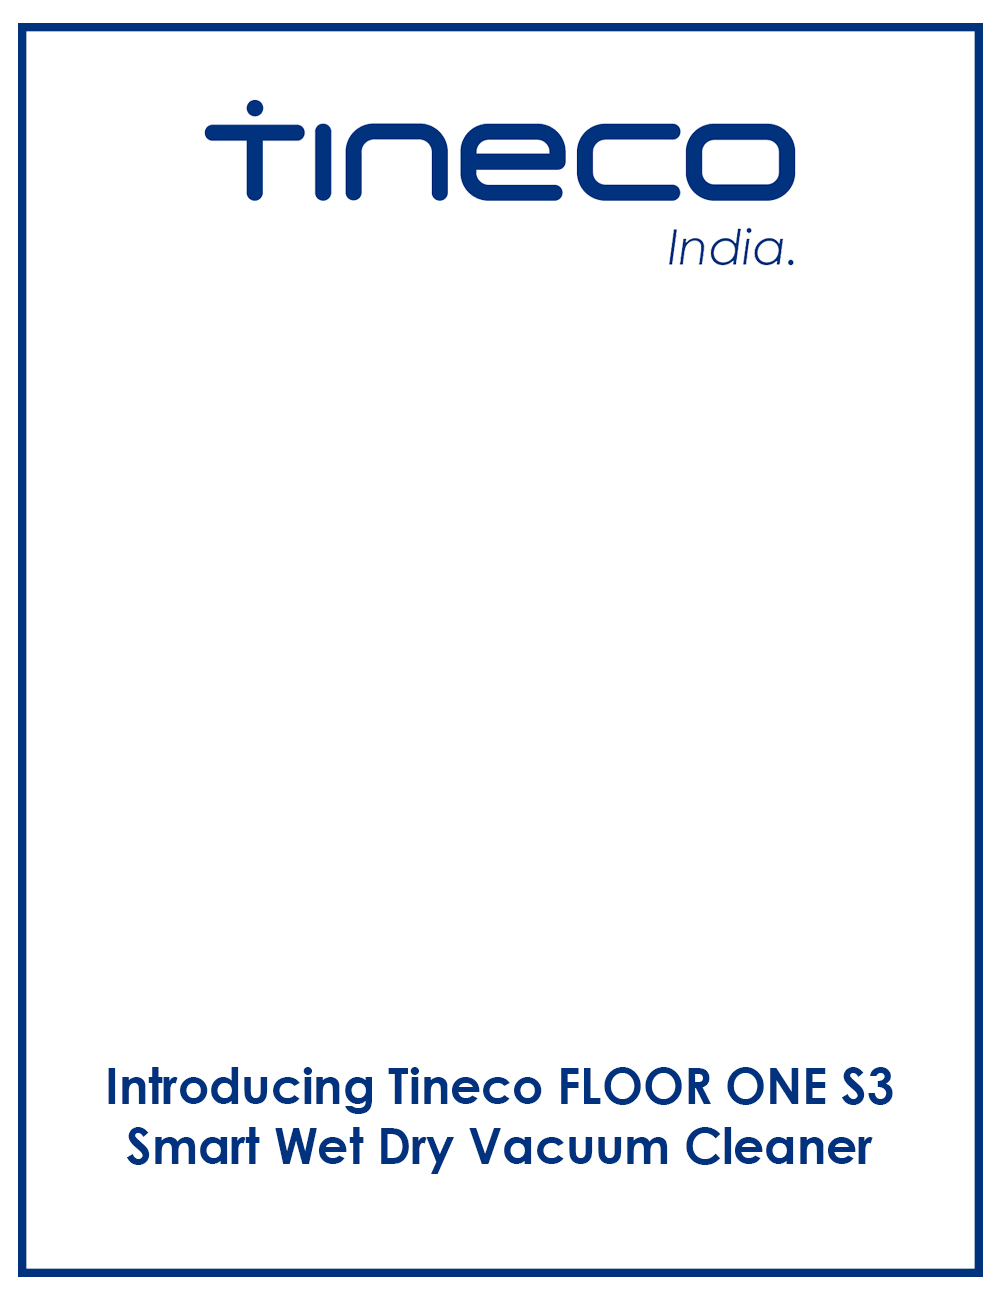 Tineco-Floor-One-S3